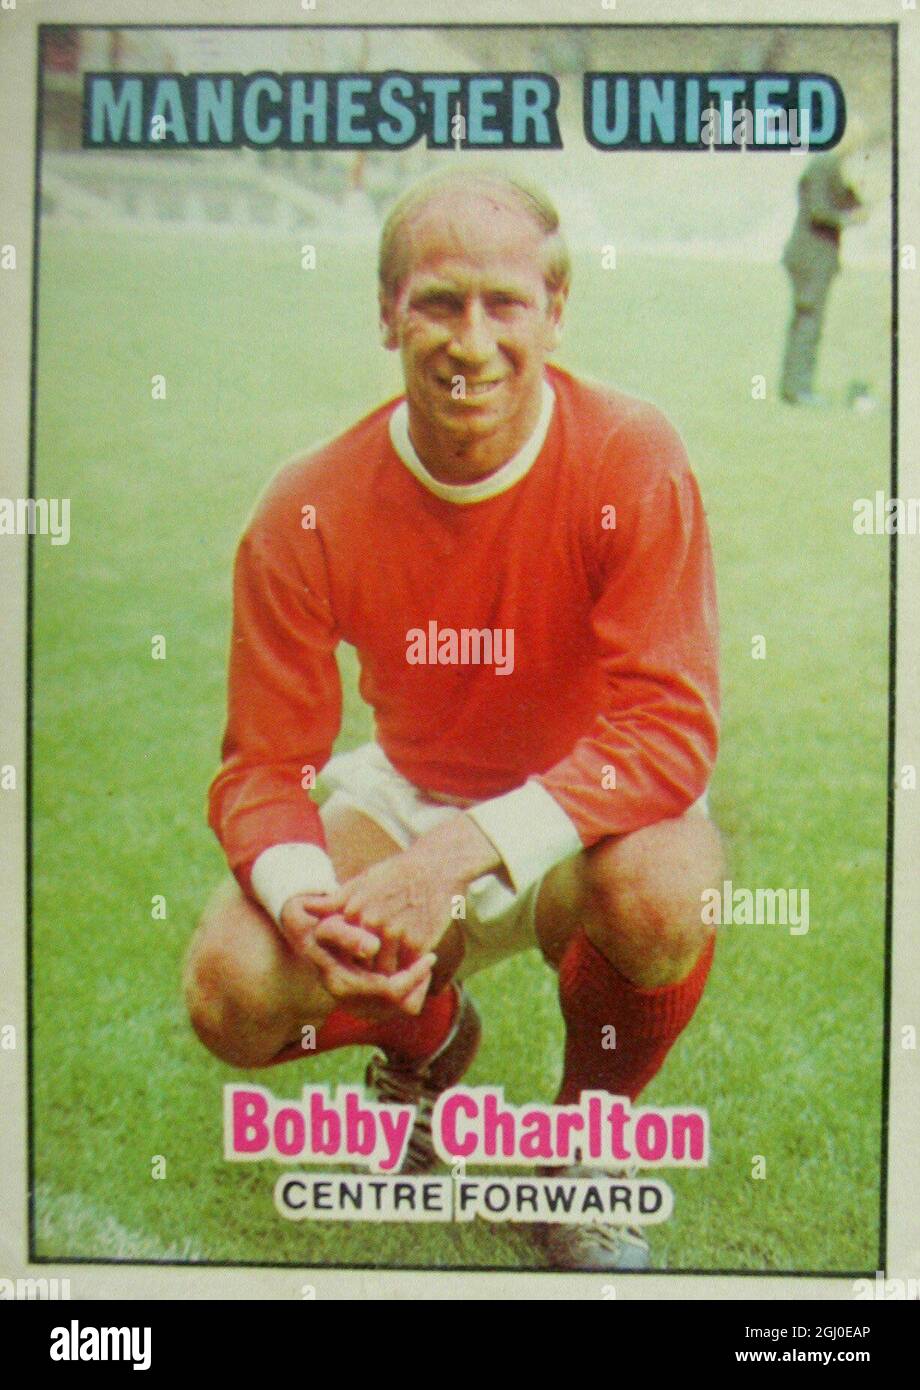 Charlton, Skipper von Manchester United, wird von den meisten Menschen seit vielen Jahren als Vertreter des Modellfußballers angesehen. Als vielseitigster Spieler hat er im Laufe der Jahre alle vorderen Positionen sowohl mit United als auch mit England besetzt und einige wunderbare Langzeit-Tore erzielt. Stockfoto